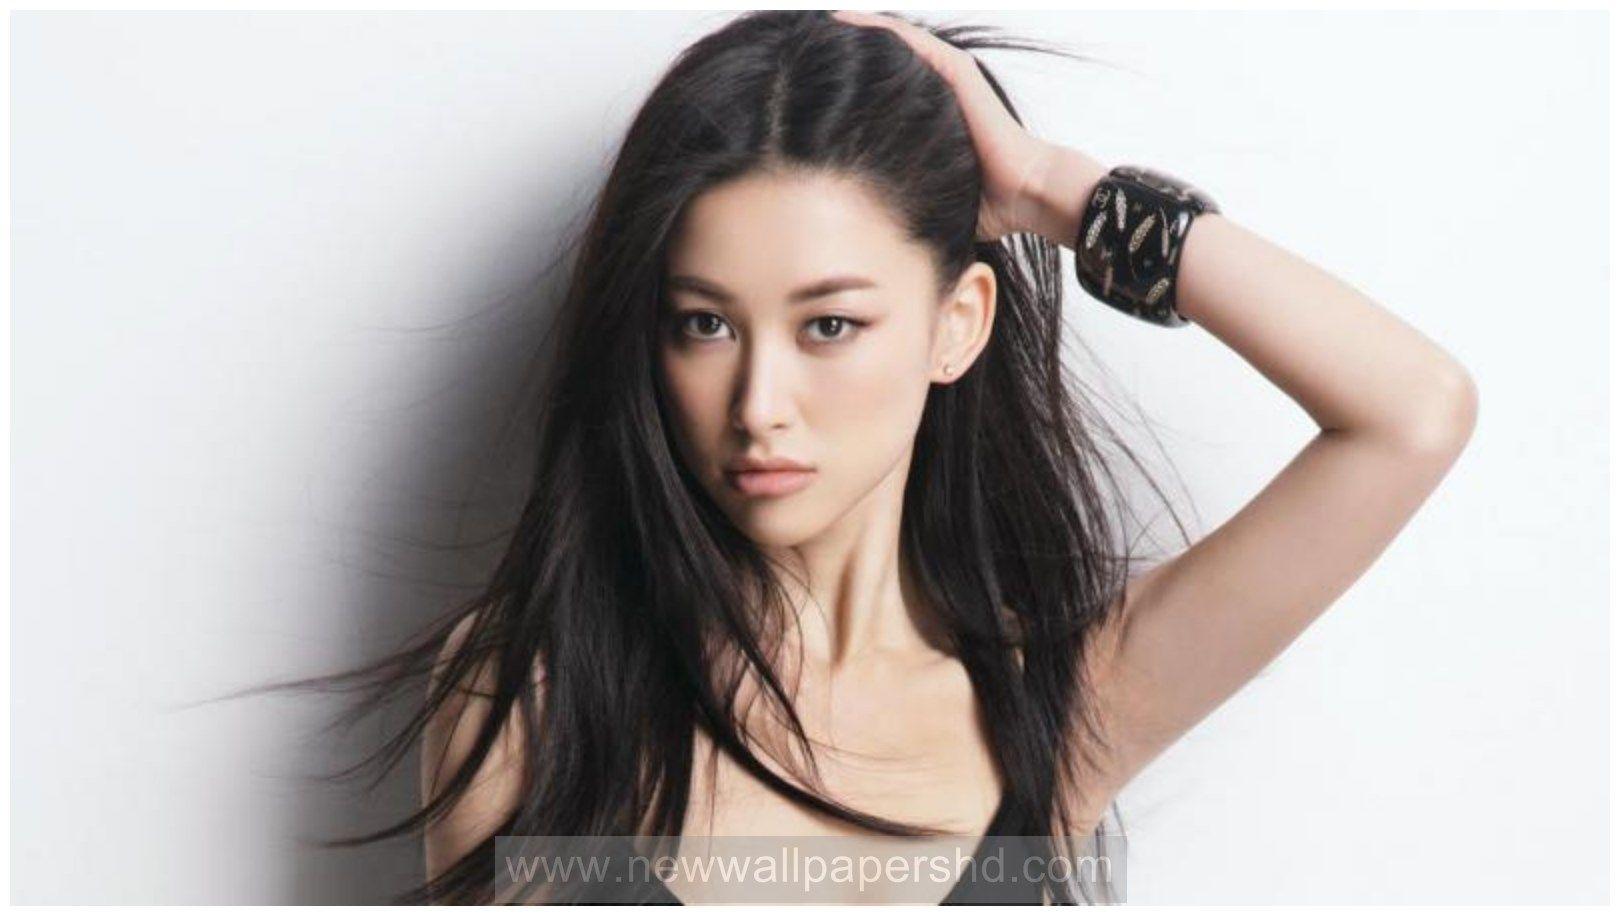 Chinese Actress Zhu Zhu Biography Profile HD Wallpaper